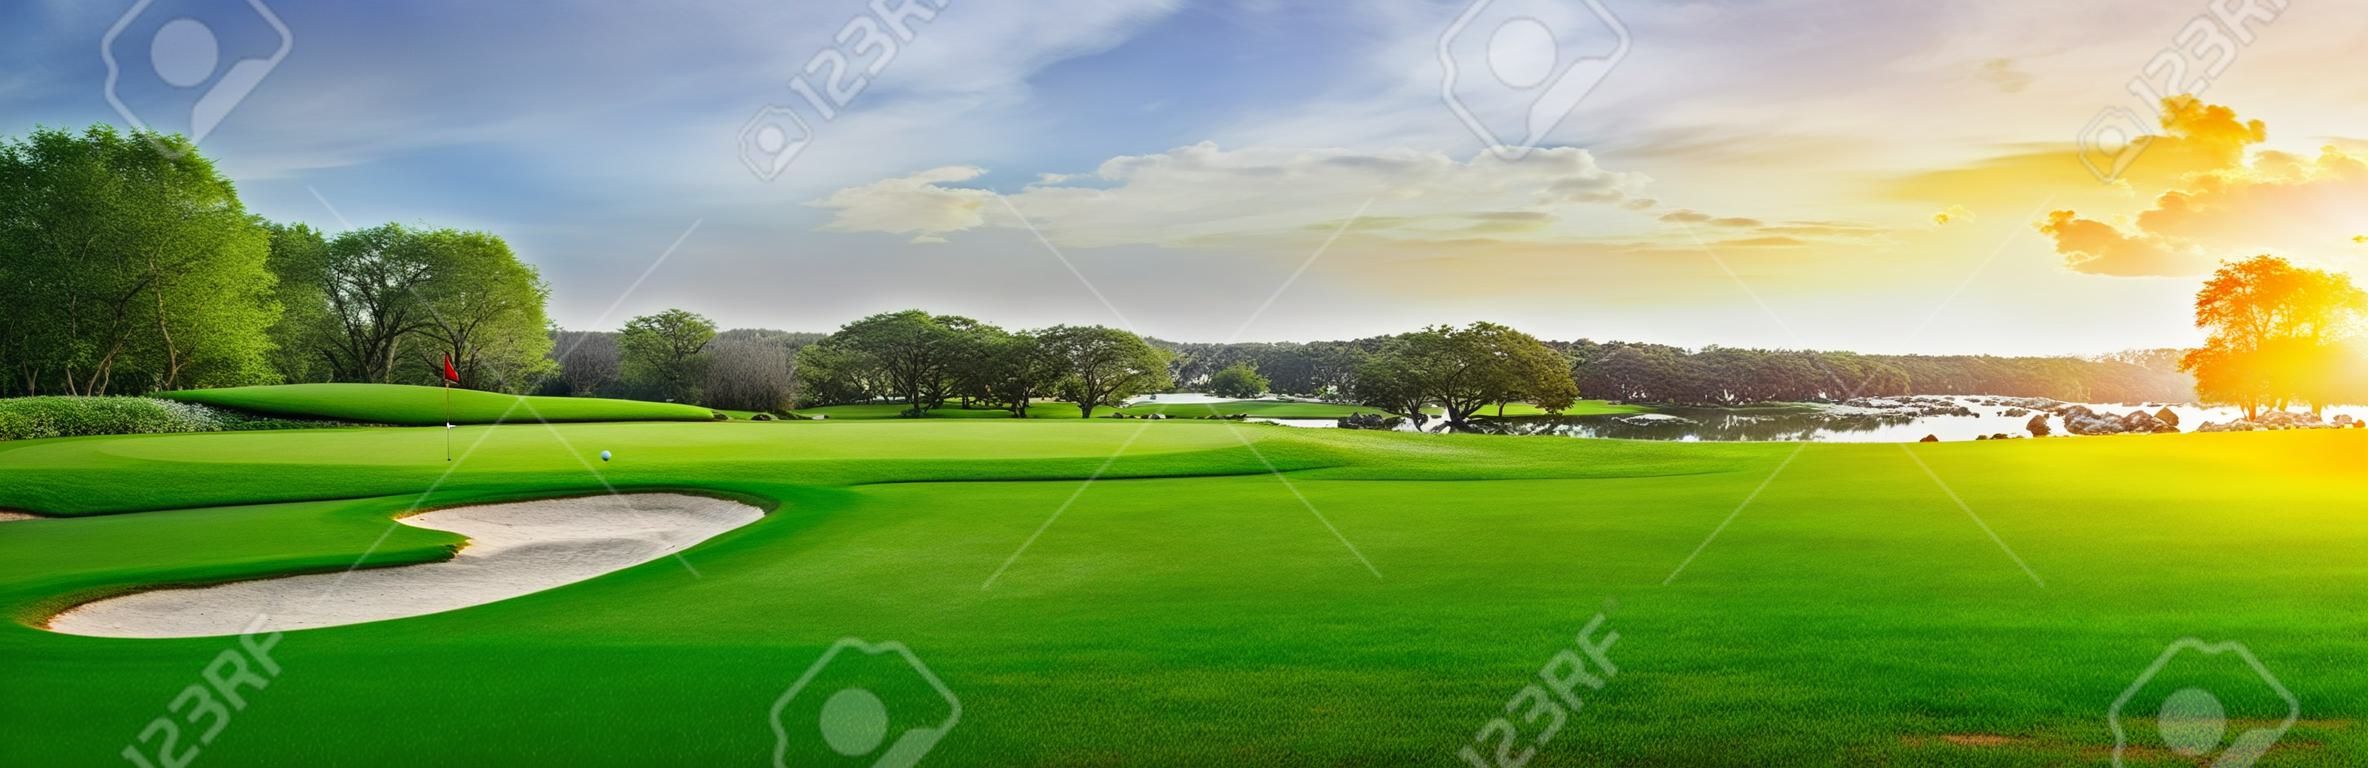 Grünes Gras und Wald auf einem Golfplatz